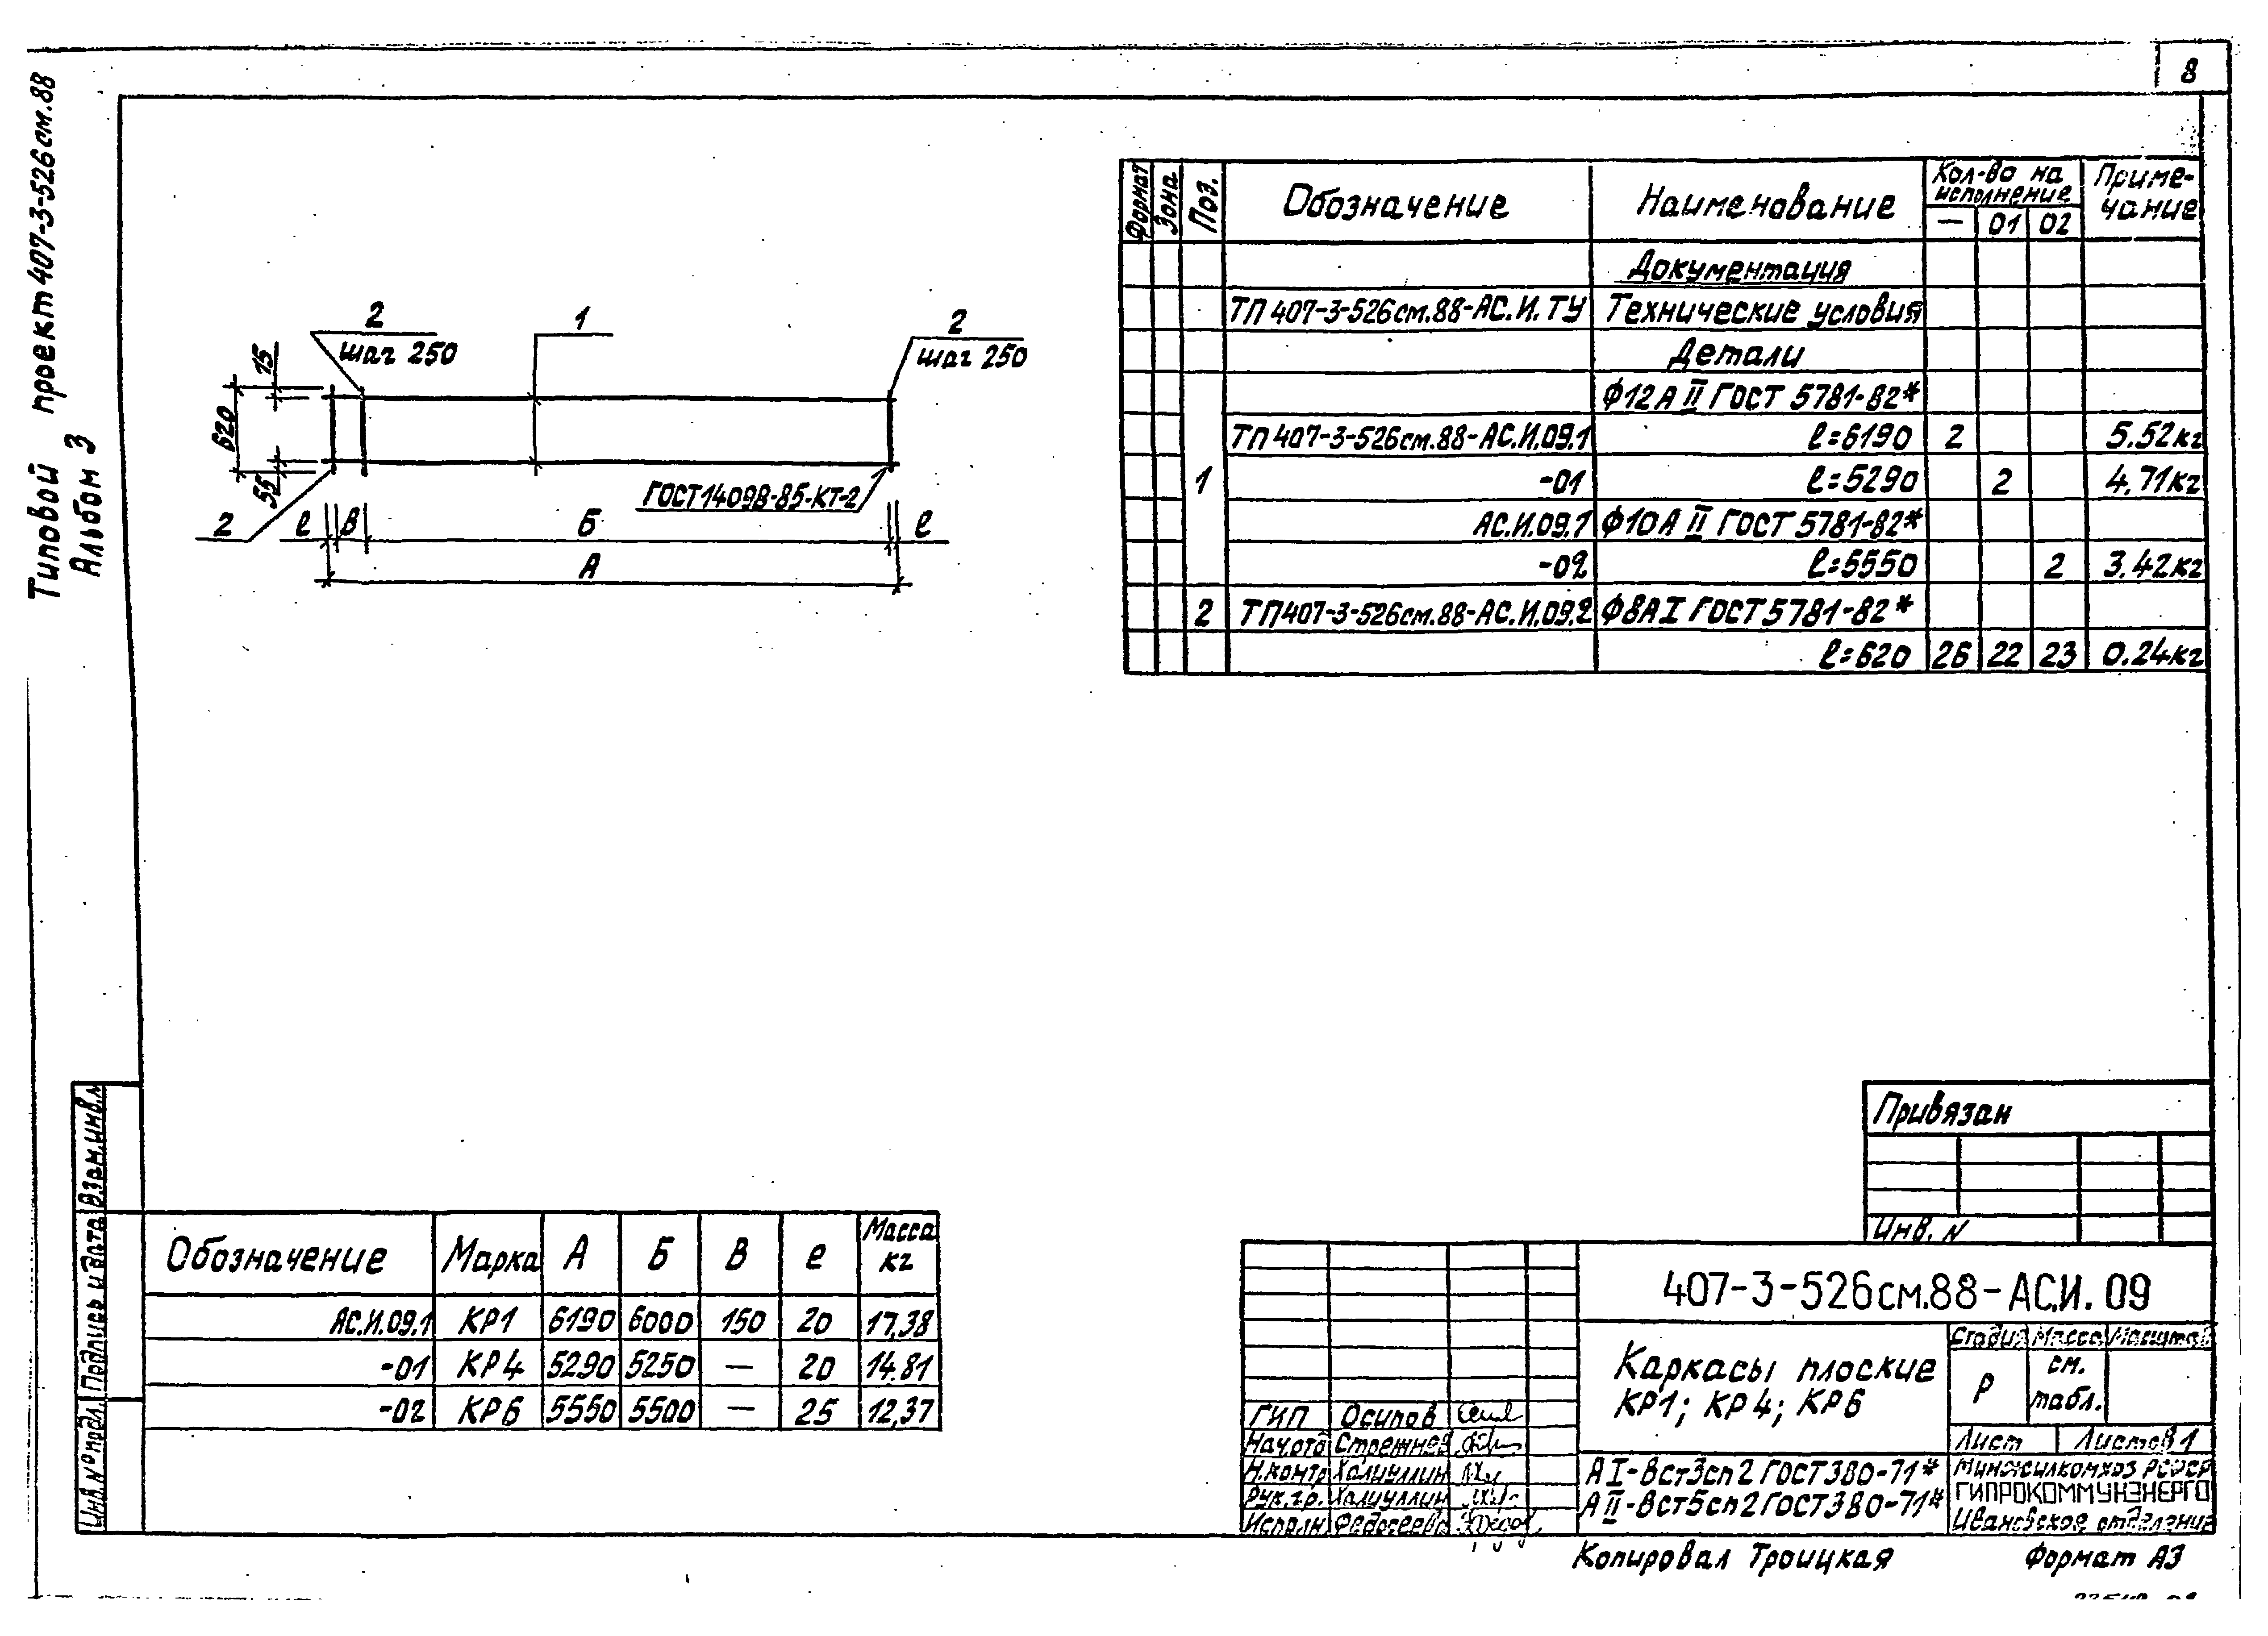 Типовой проект 407-3-523м.88